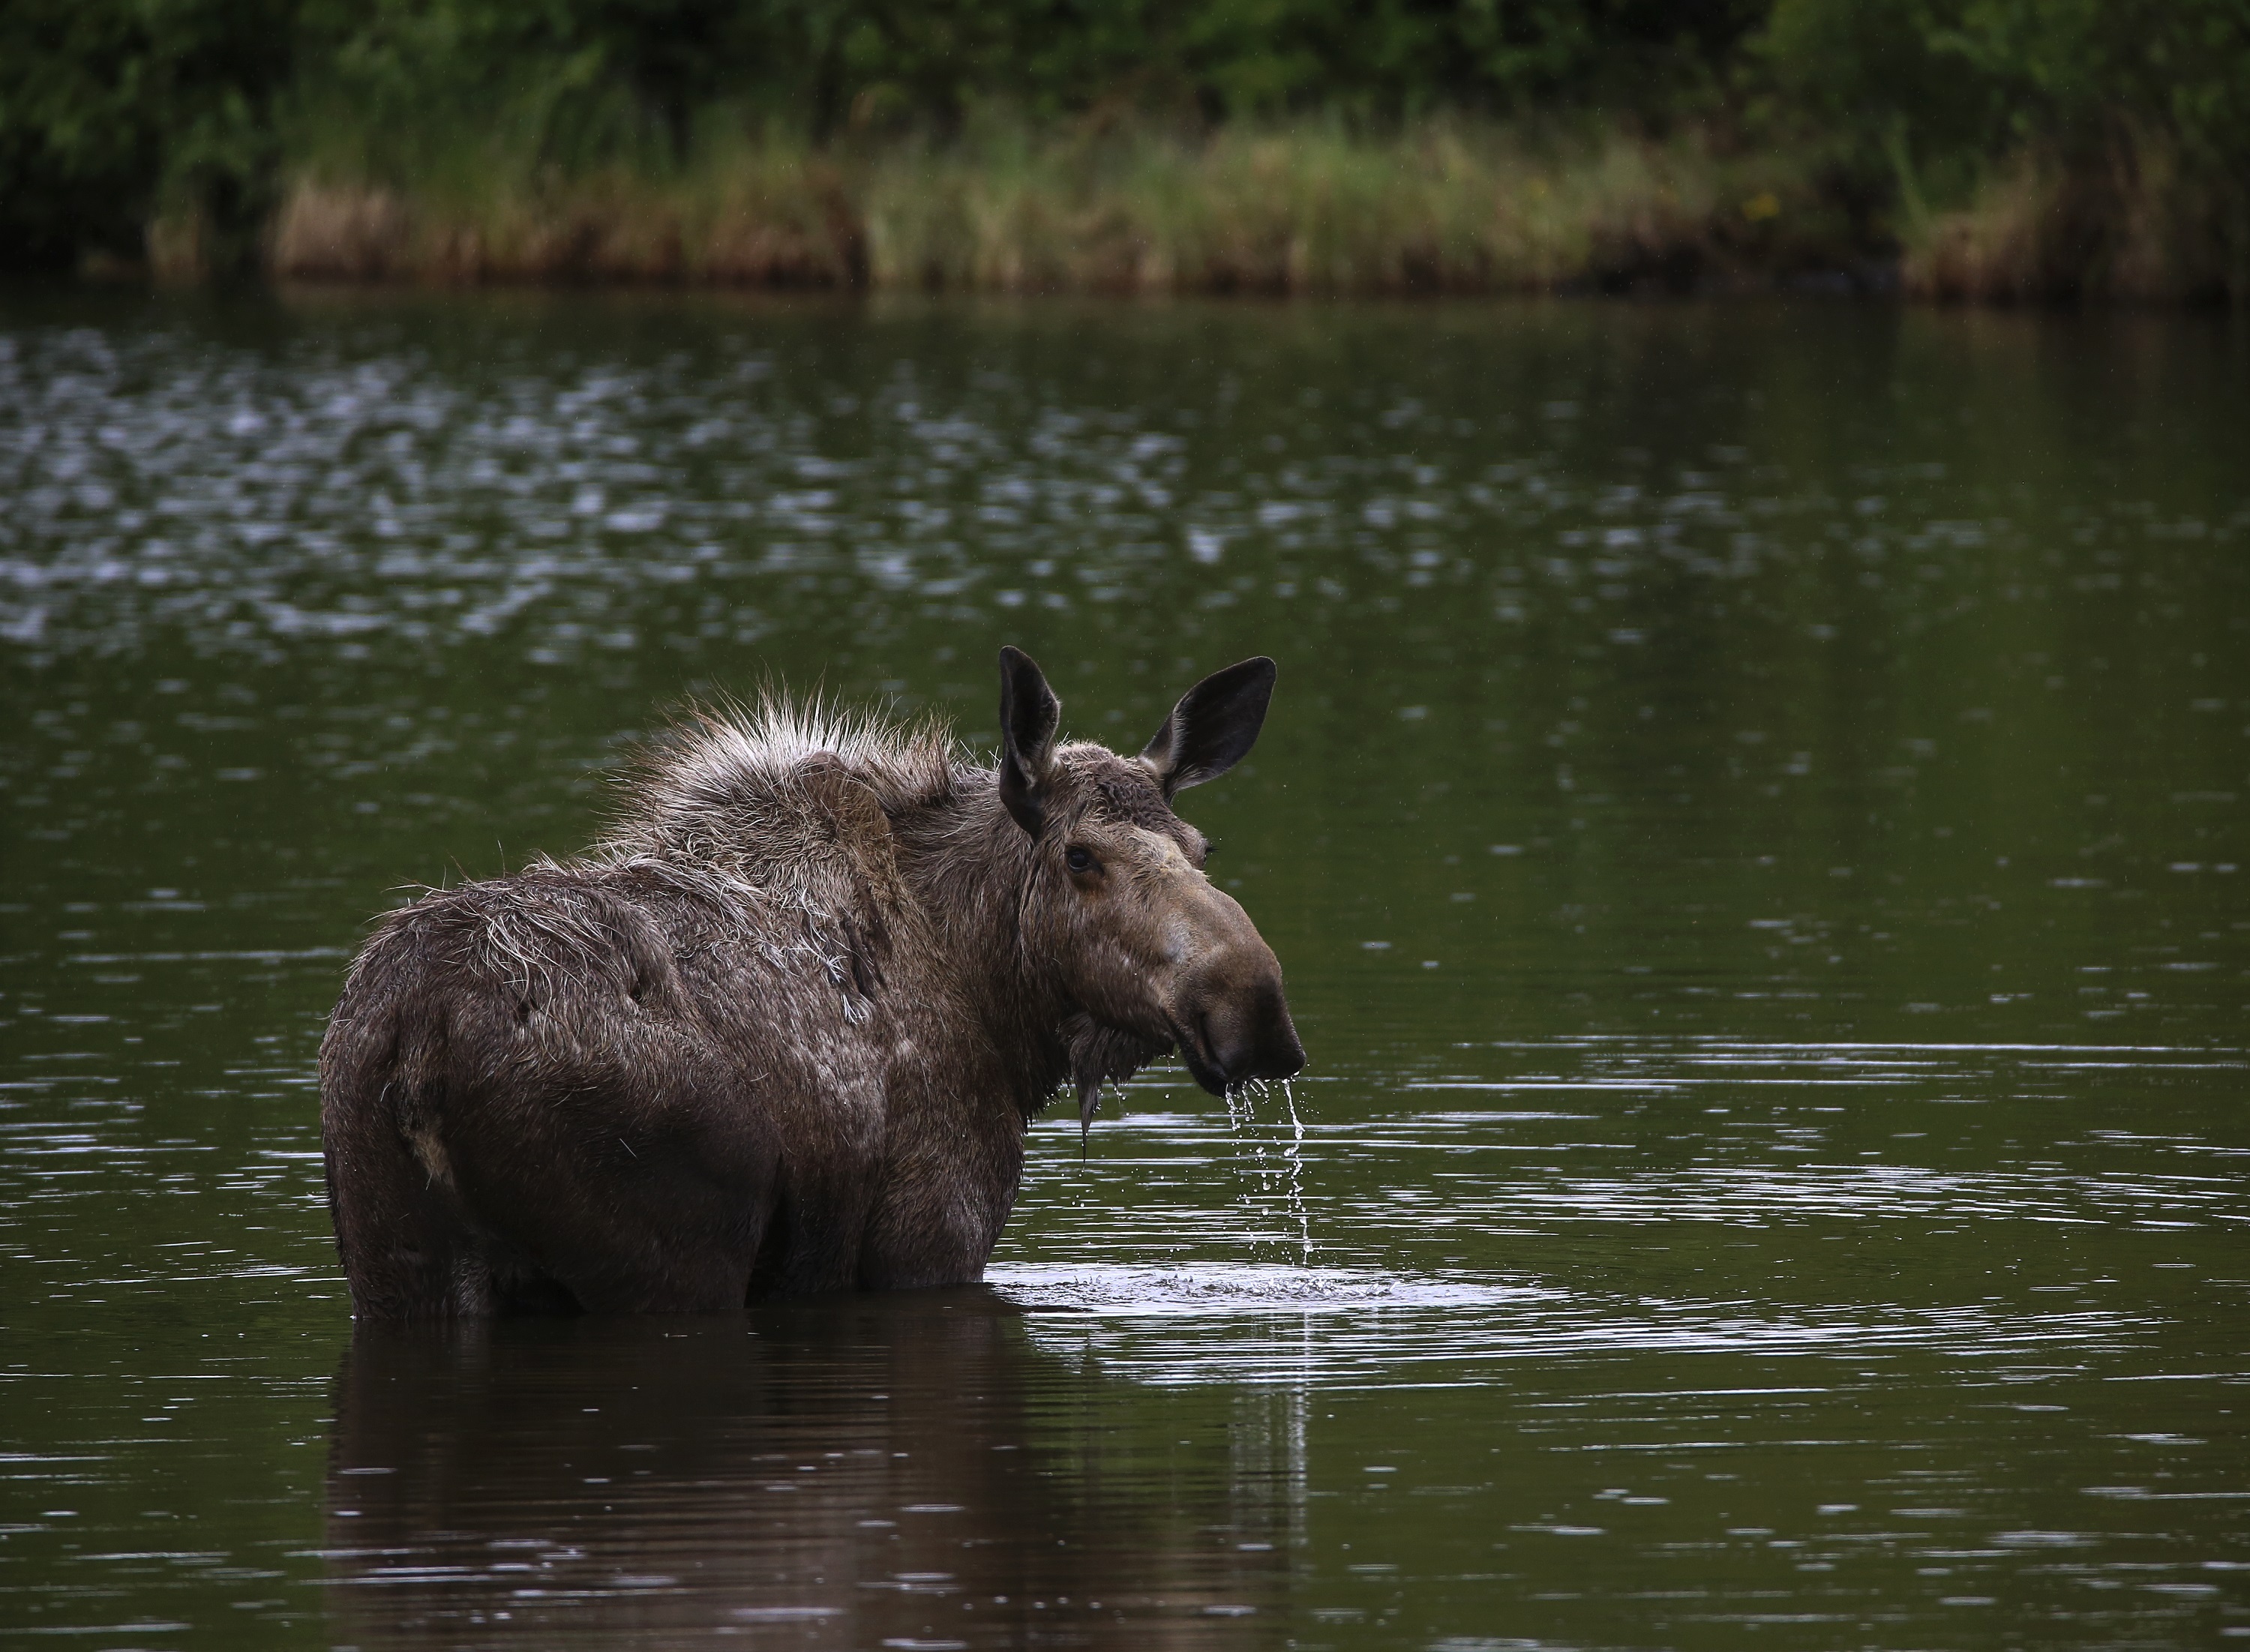 Moose in marsh area